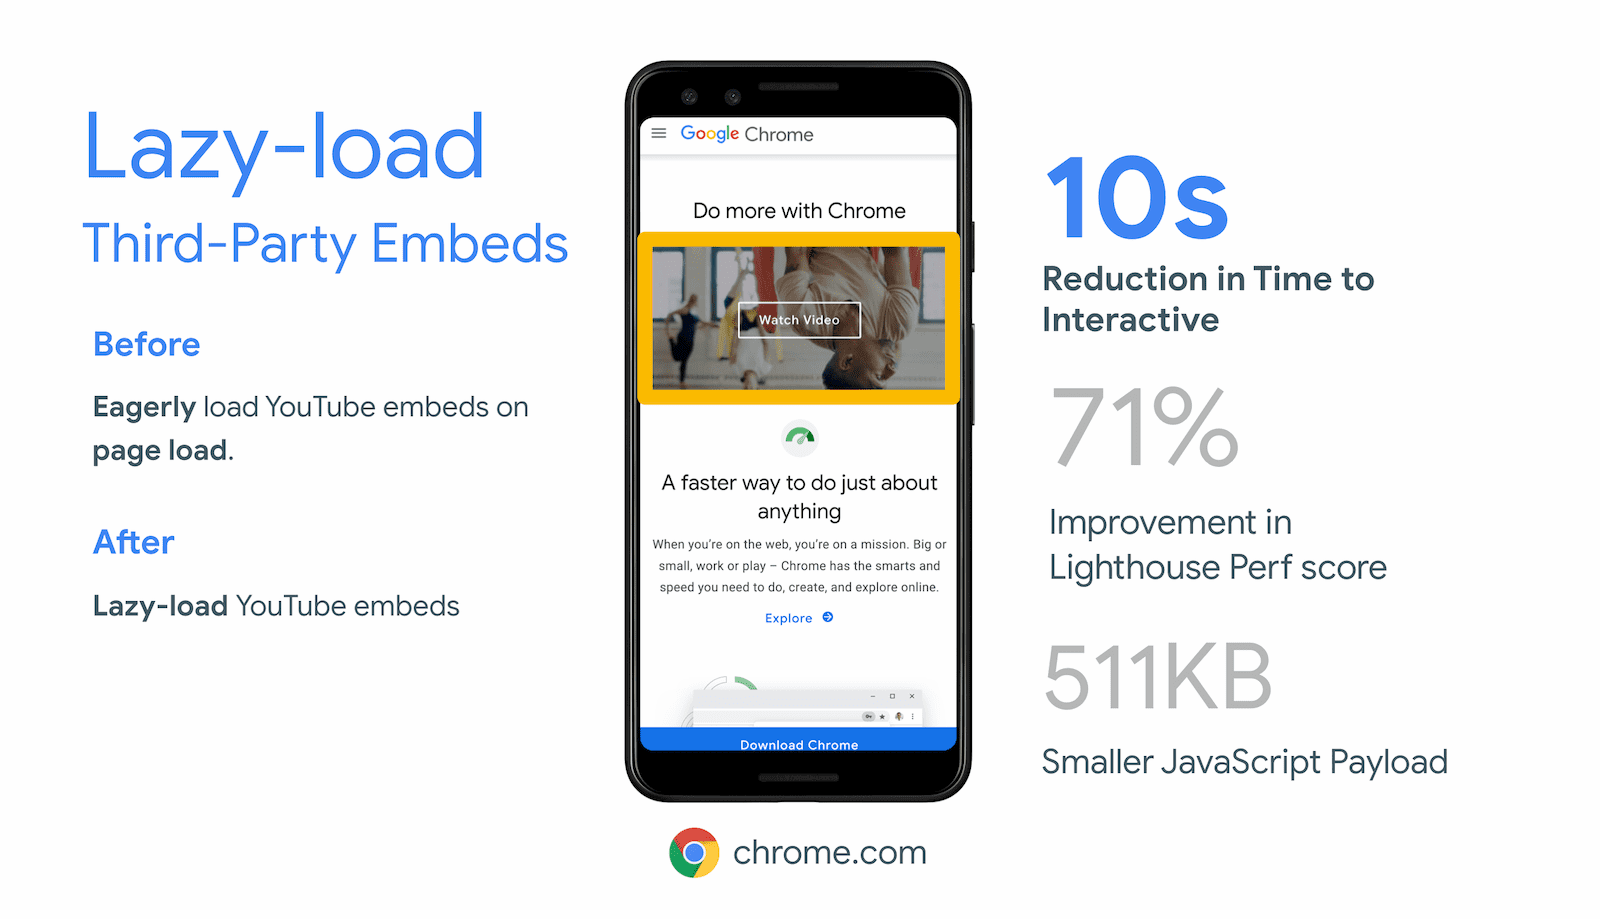 O Chrome.com conseguiu uma redução de 10 segundos no tempo até a interação com o carregamento lento de iframes fora da tela na incorporação de vídeo do YouTube